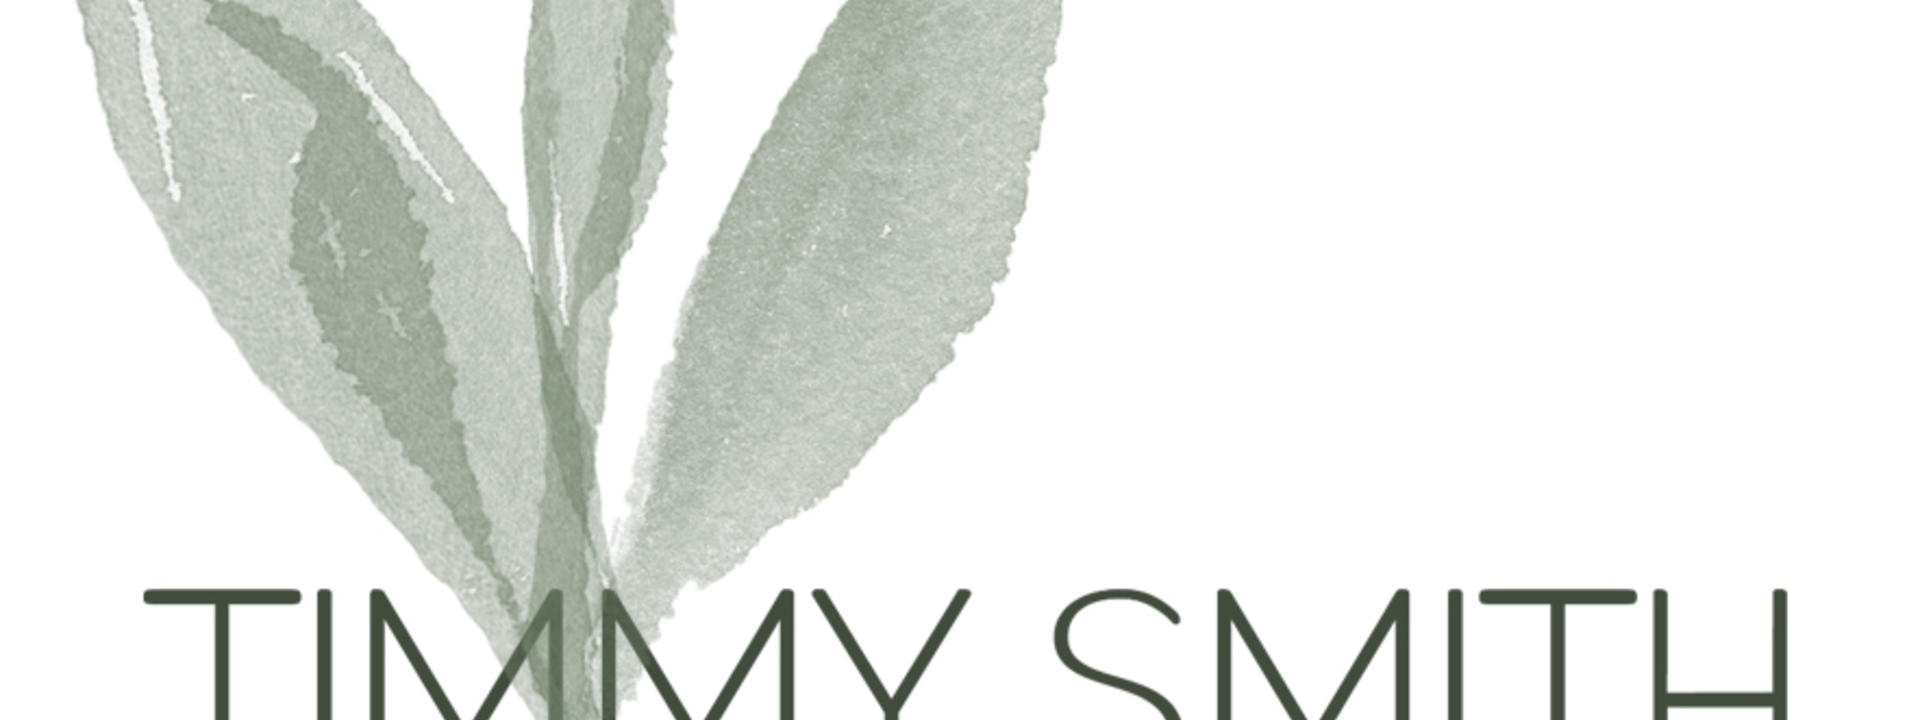 timmy-smith-logo-jpeg.jpeg